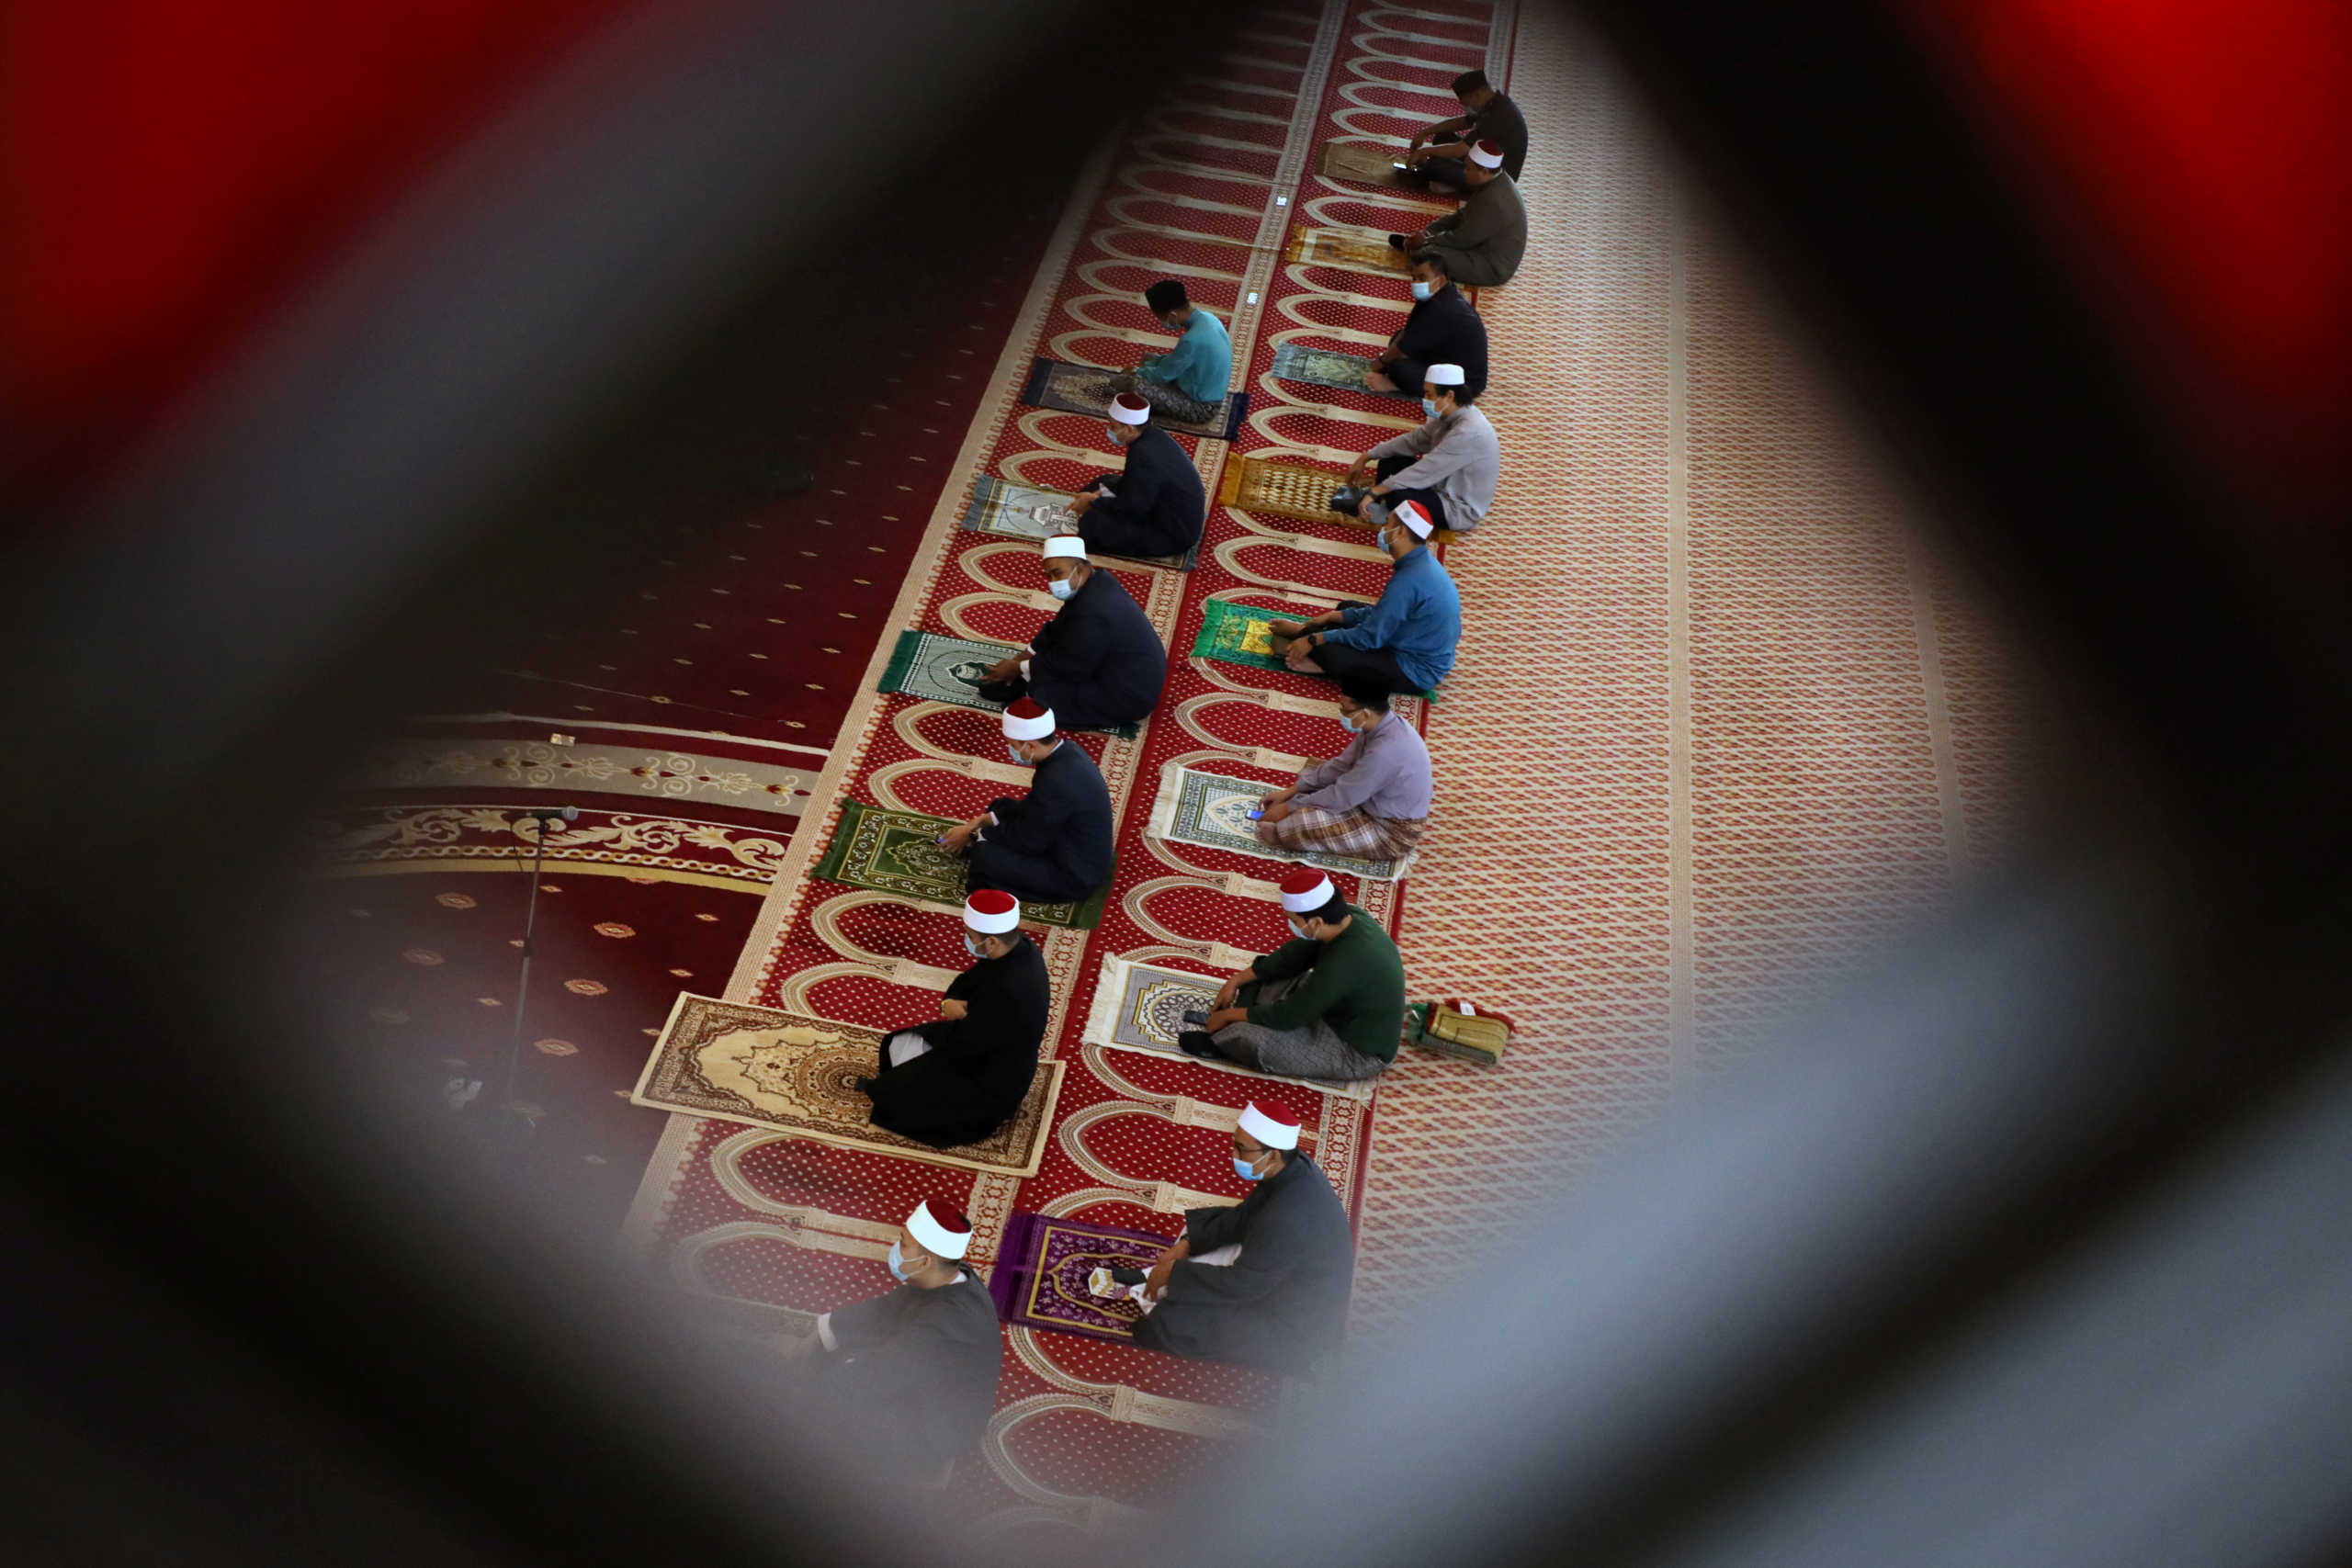 Χαμός στη Σμύρνη! Νέο “χακάρισμα” στα τζαμιά μετά το “Bella Ciao”